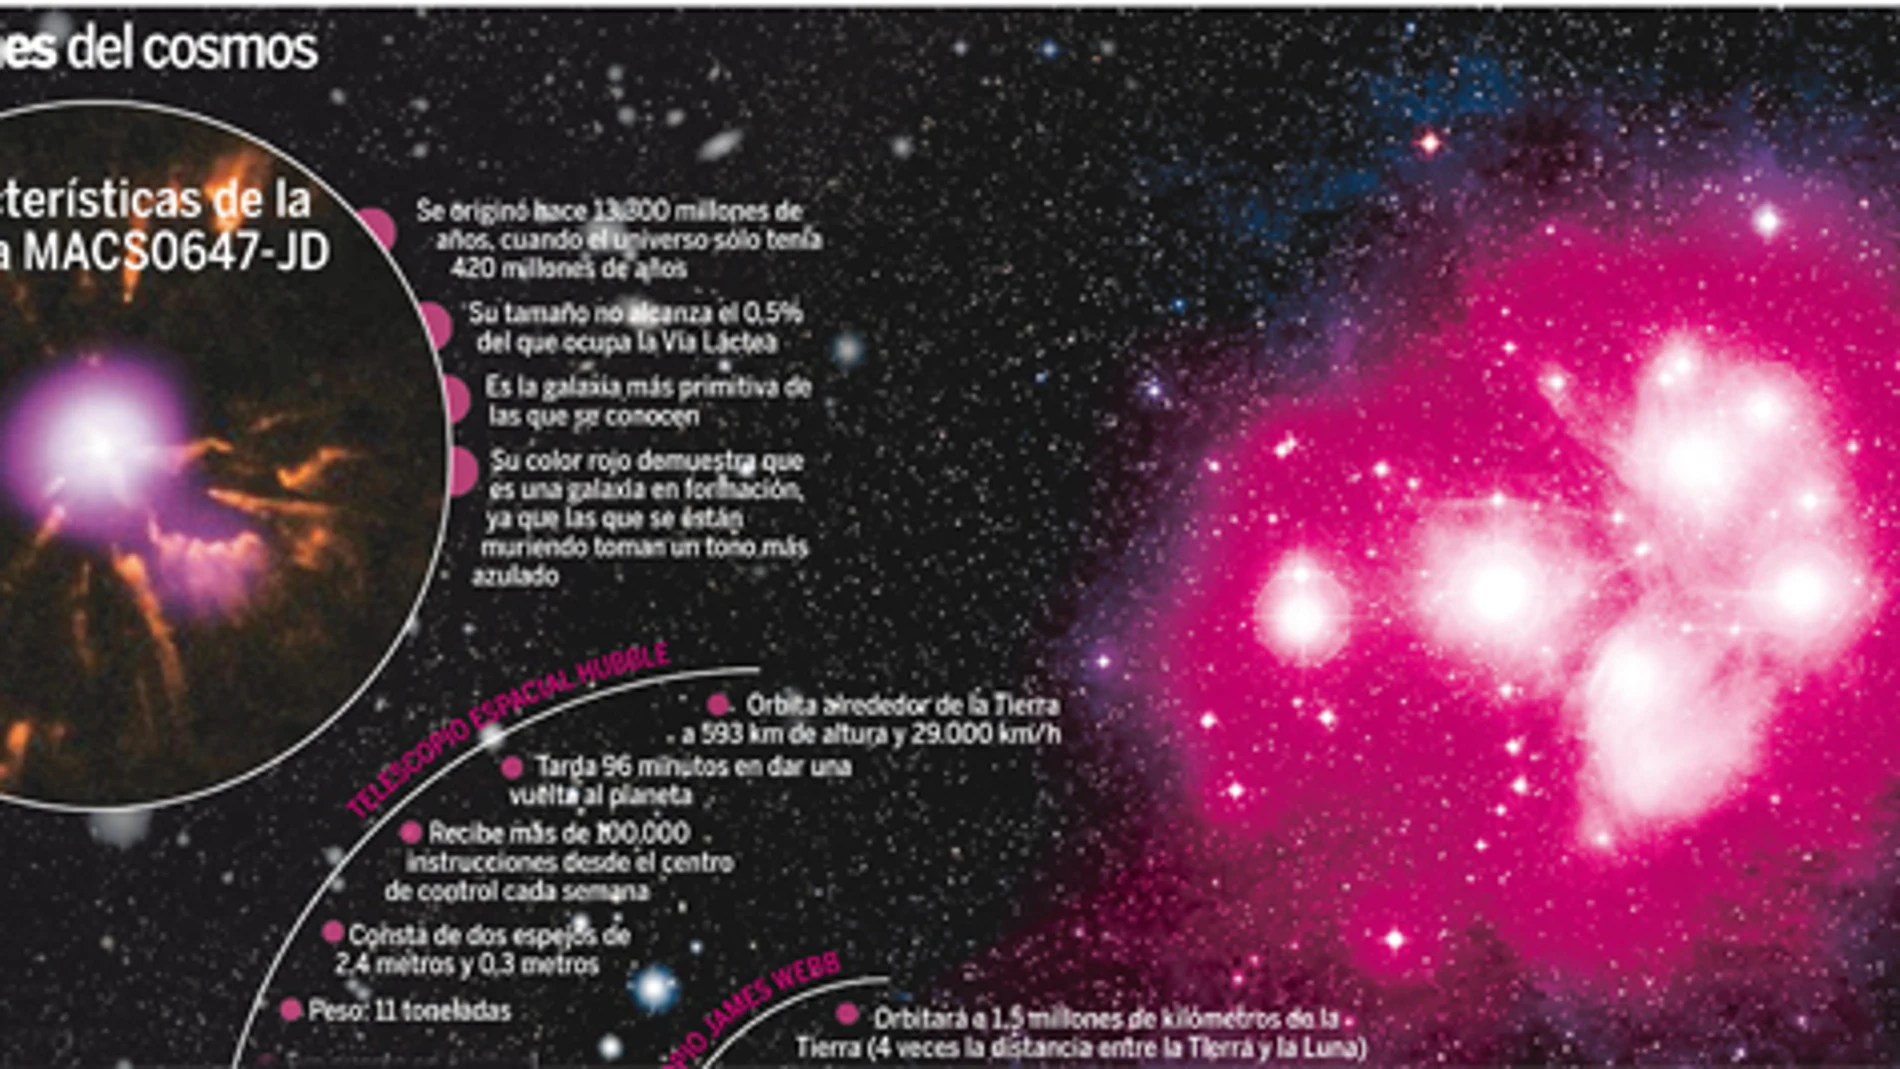 Cazan la galaxia más lejana a solo 420 millones de años del Big Bang